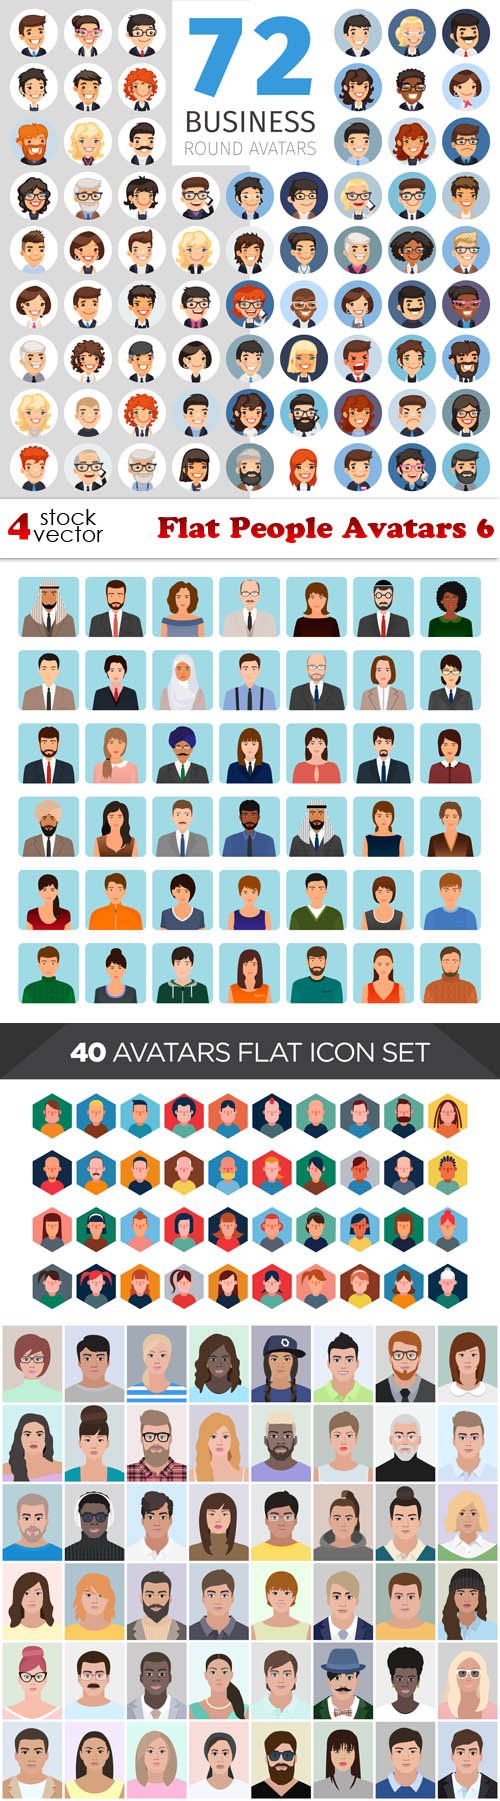 Vectors - Flat People Avatars 6